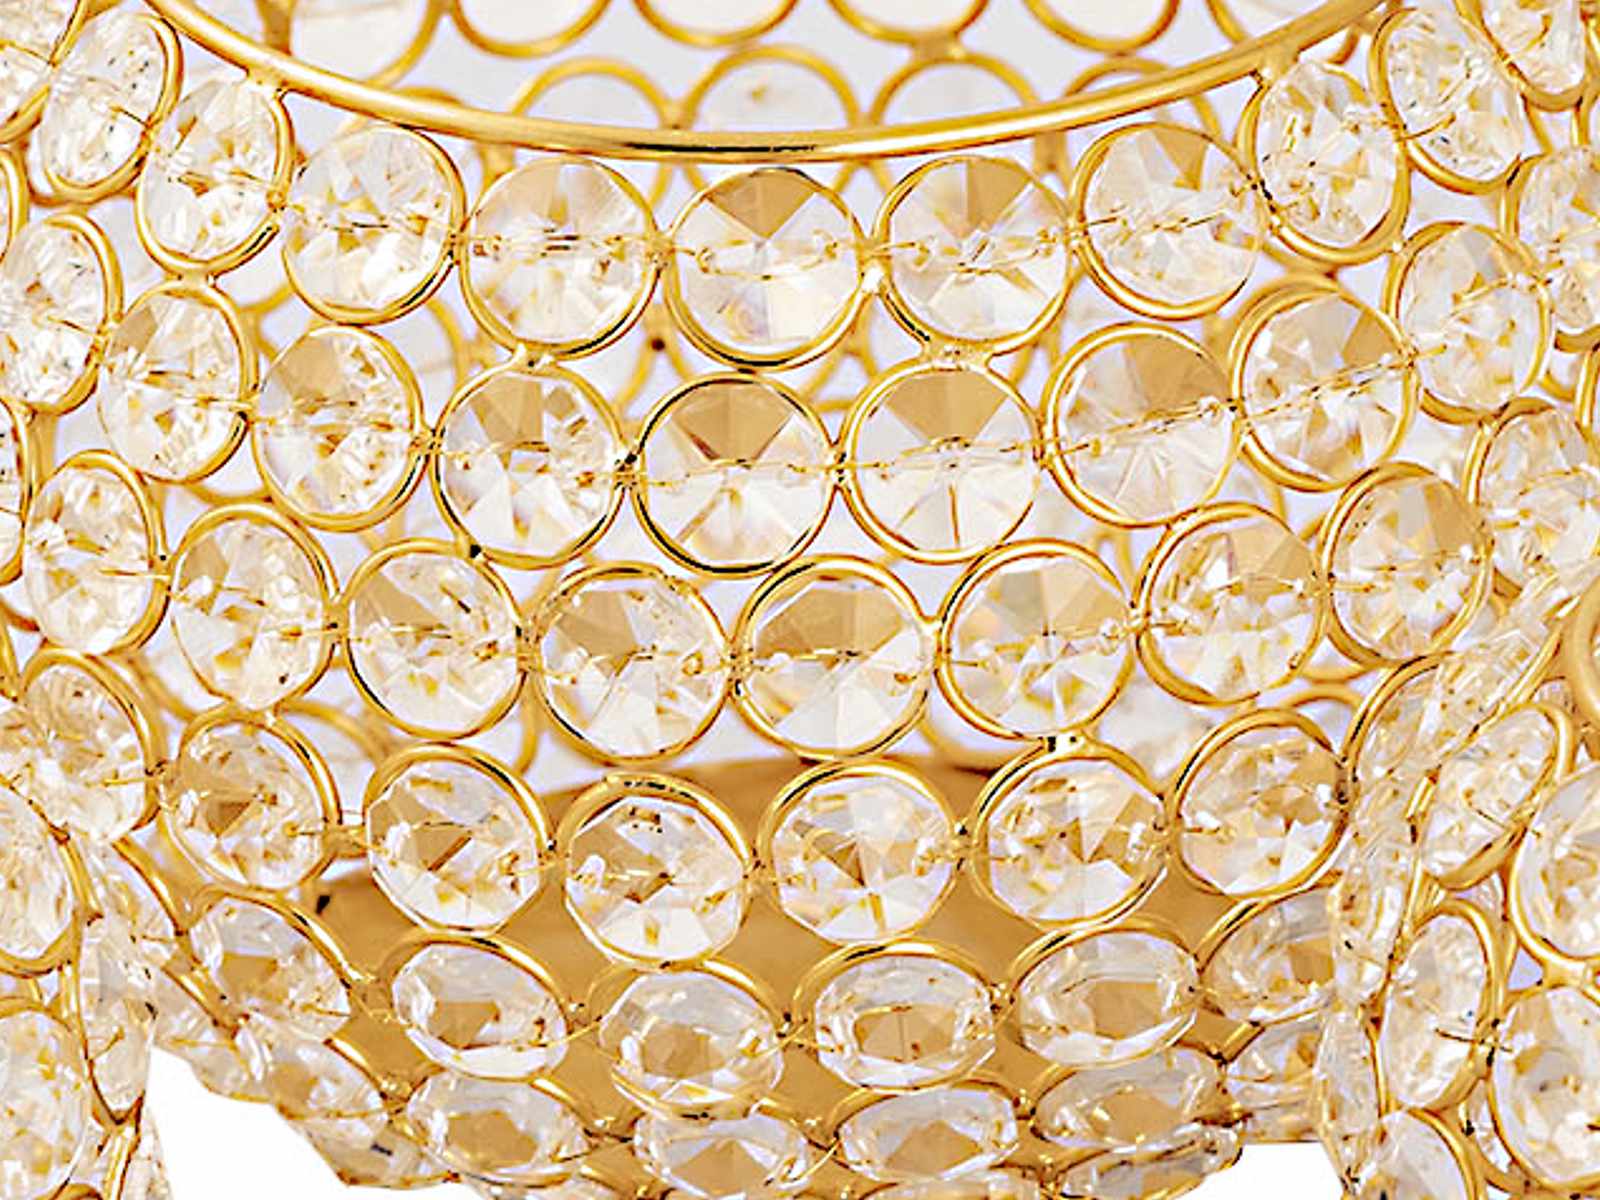 Kerzenhalter Set 3-teilig Teelichthalter Crystal Kerzenständer gold o. silber  Vintage Kristall | Casamia Wohnen